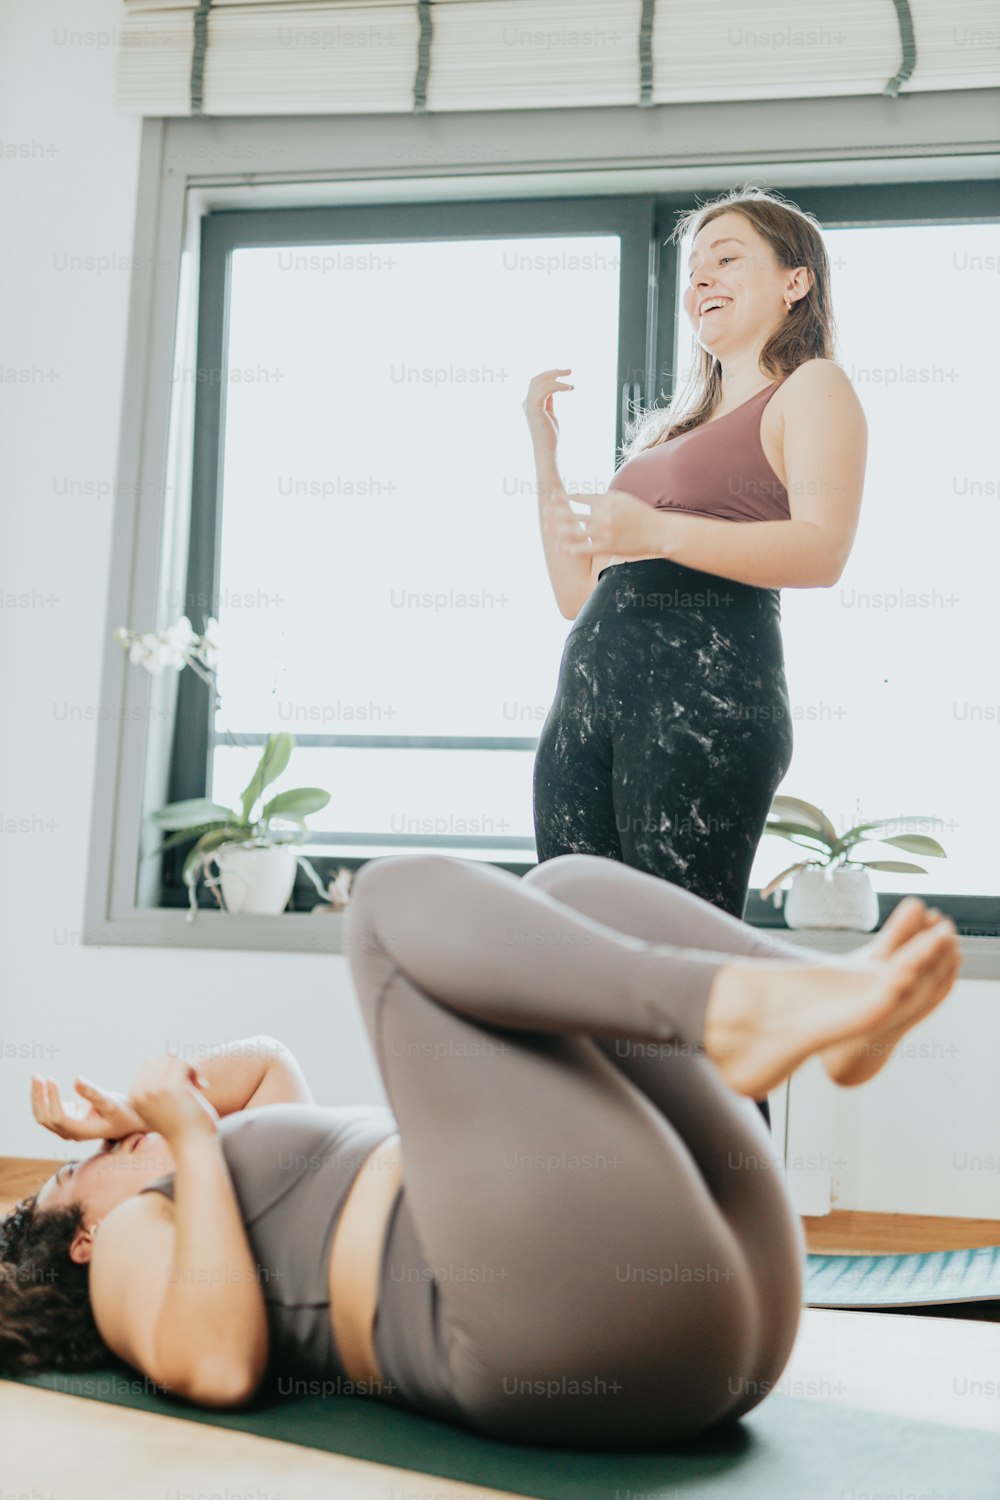 Une femme dans une pose de yoga avec une autre femme en arrière-plan